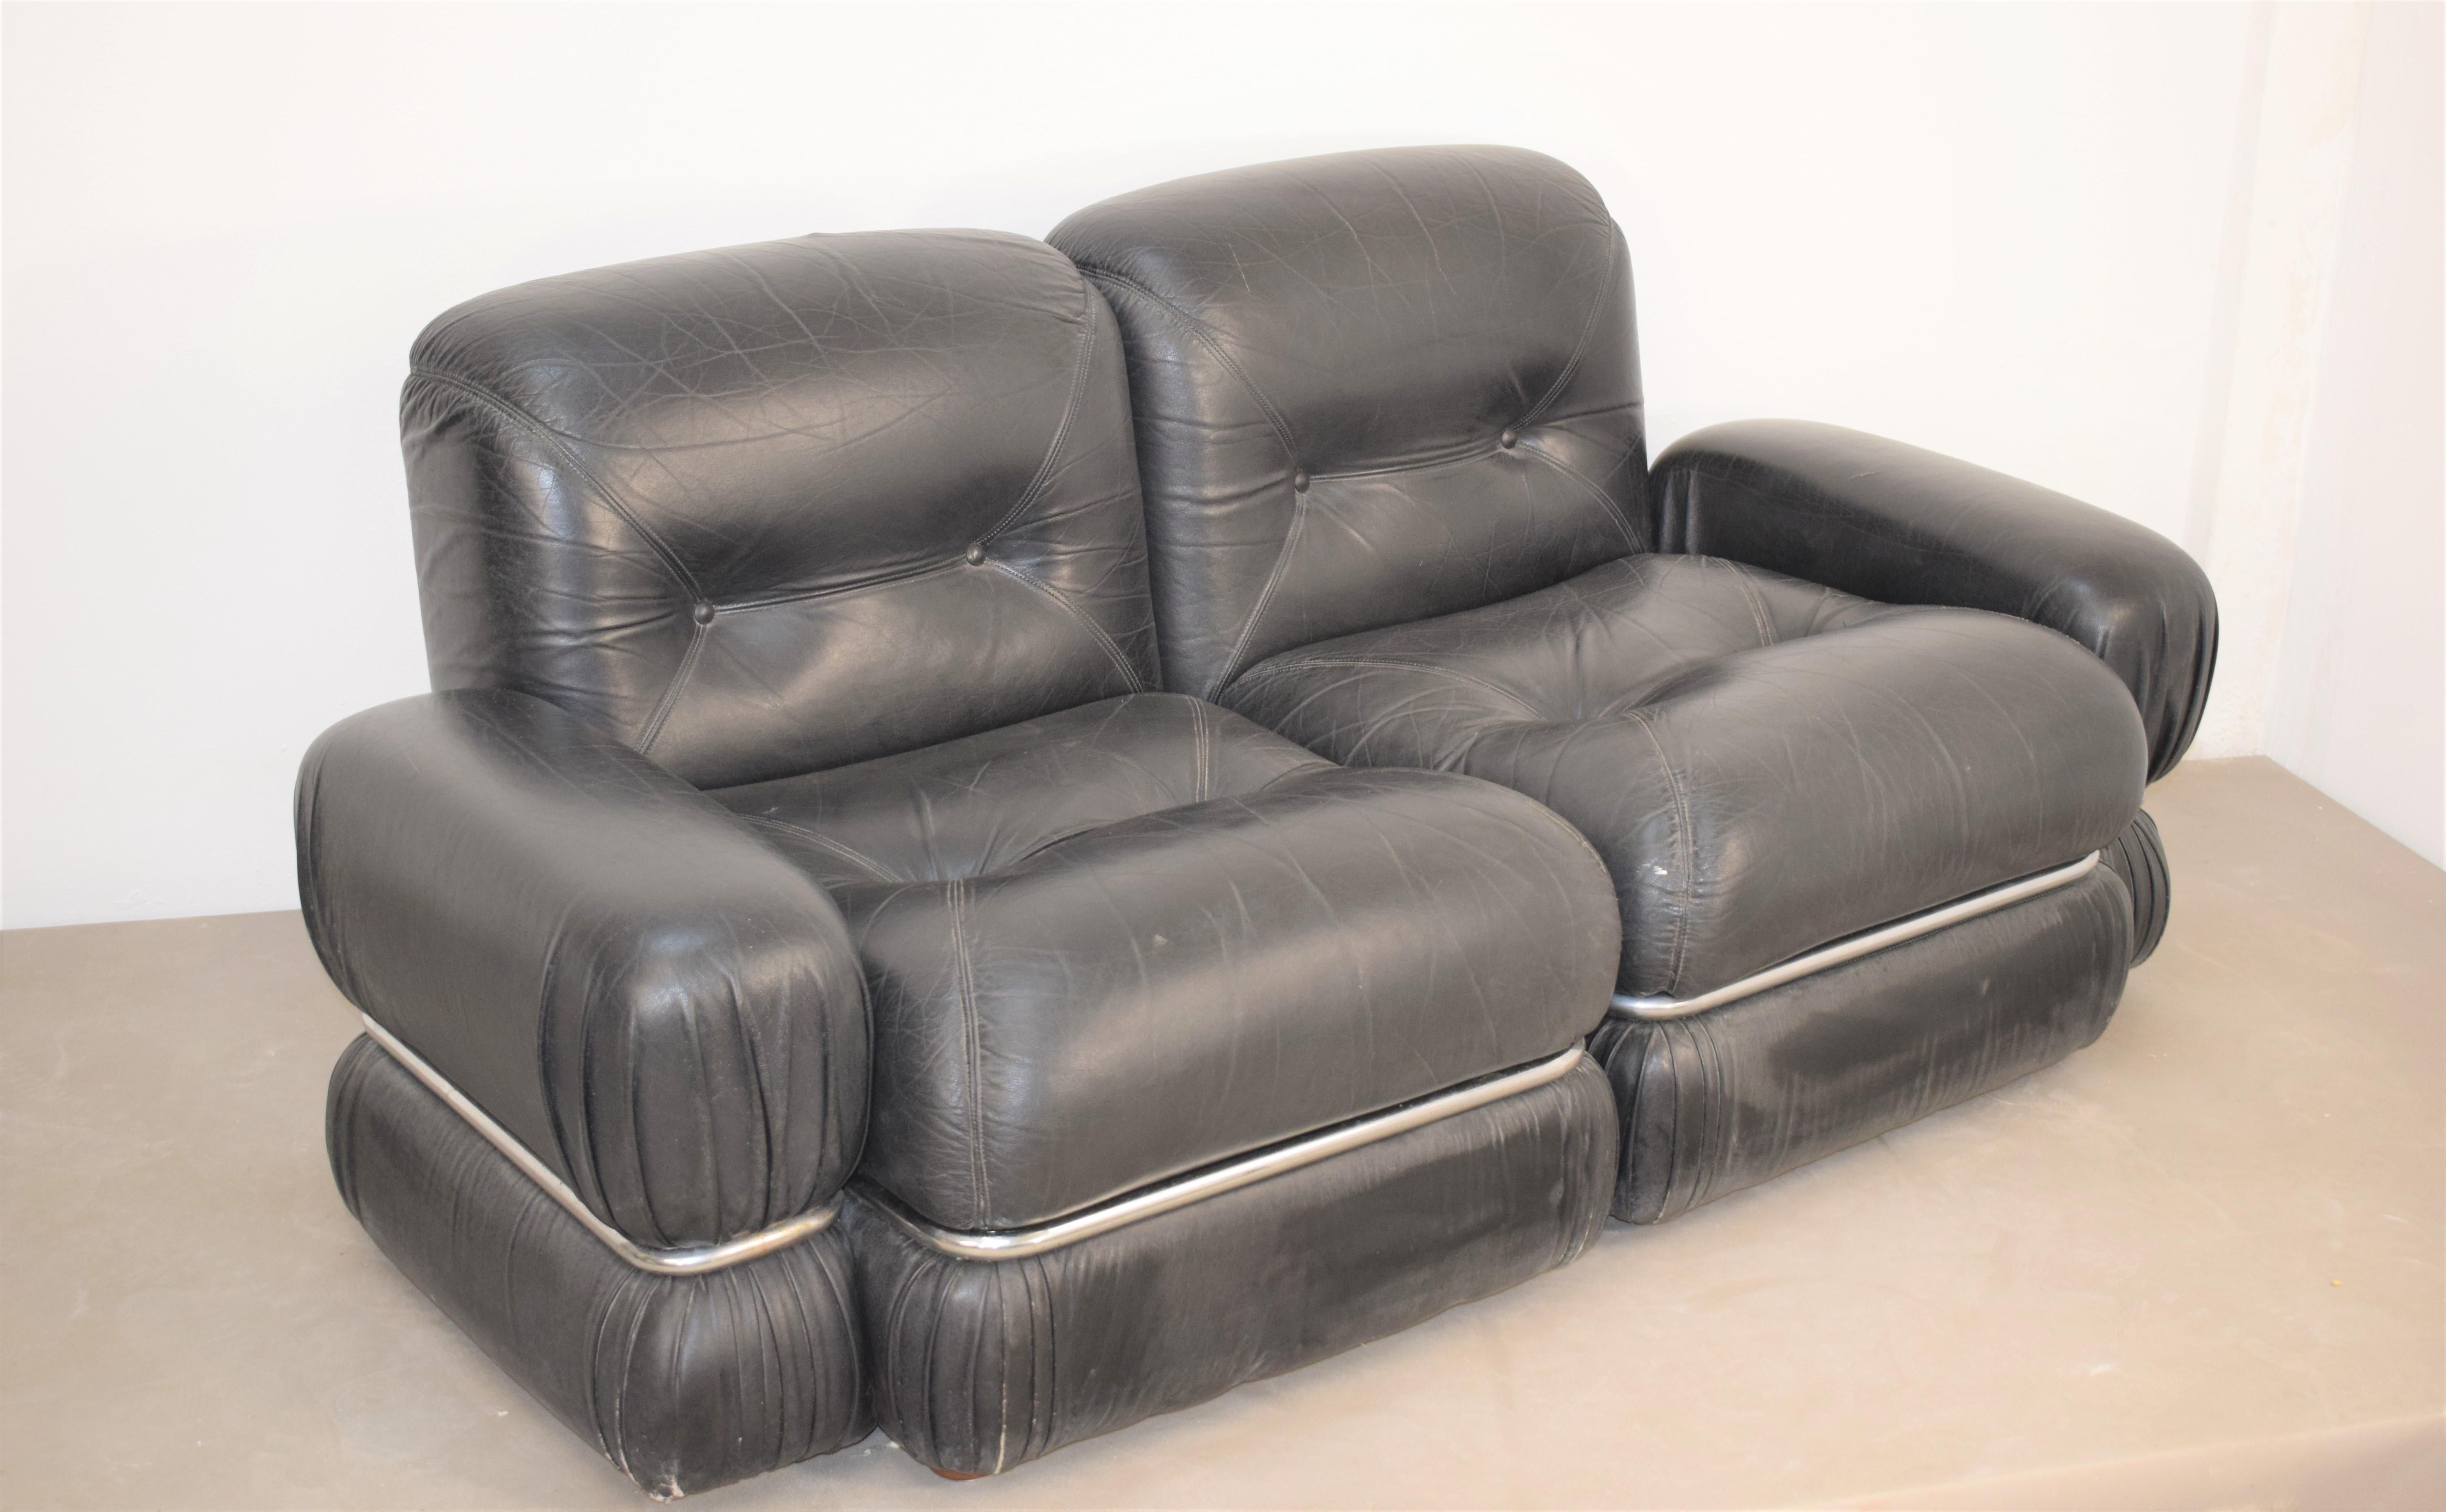 Italian sofa, 1970s .
Dimensions: H= 66 cm; W=150 cm; D= 85cm; Height seat= 40 cm.